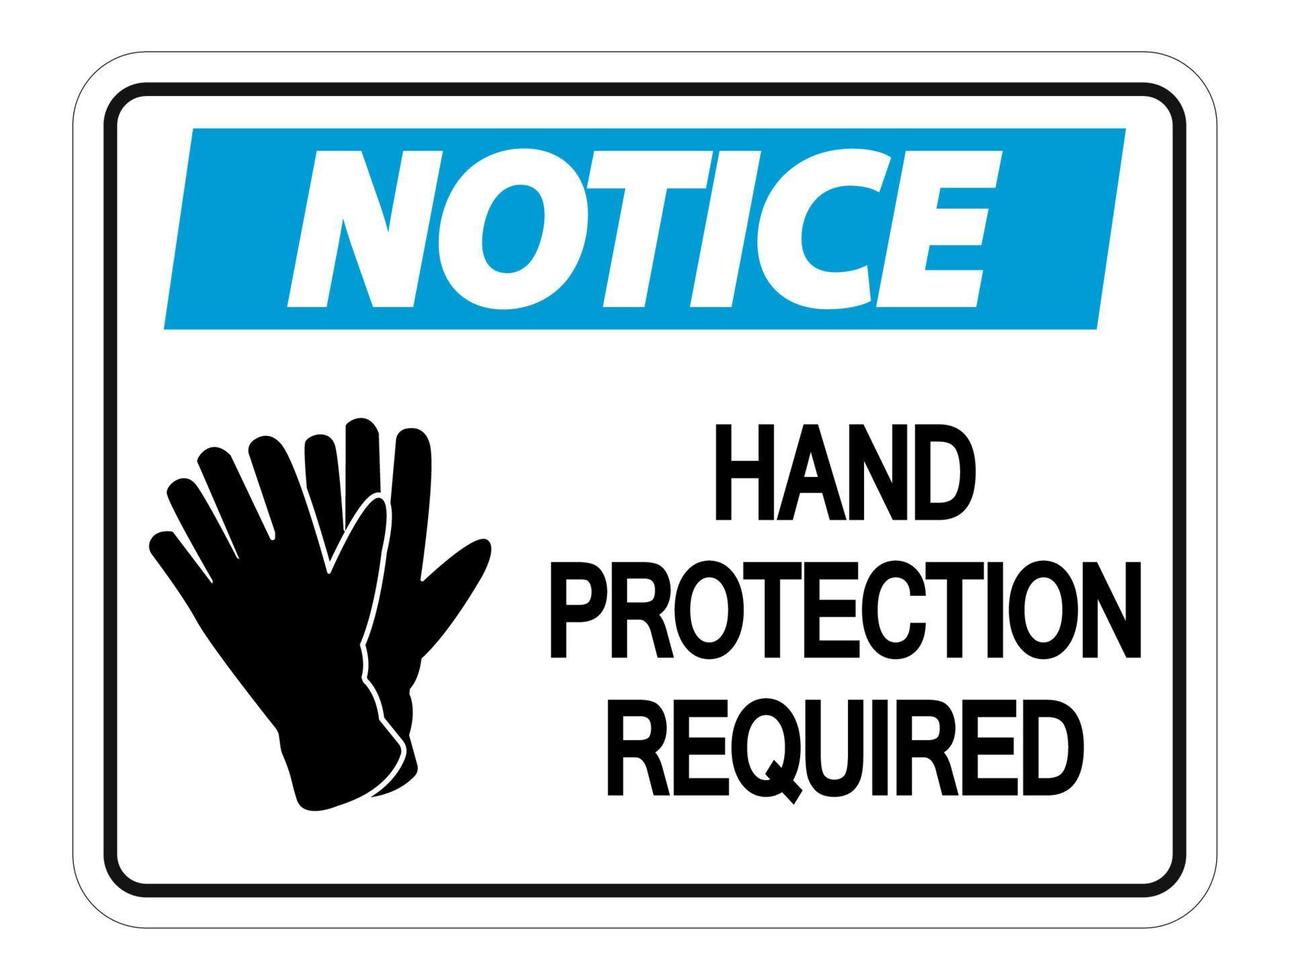 nota protezione delle mani richiesta segno a parete su sfondo bianco vettore